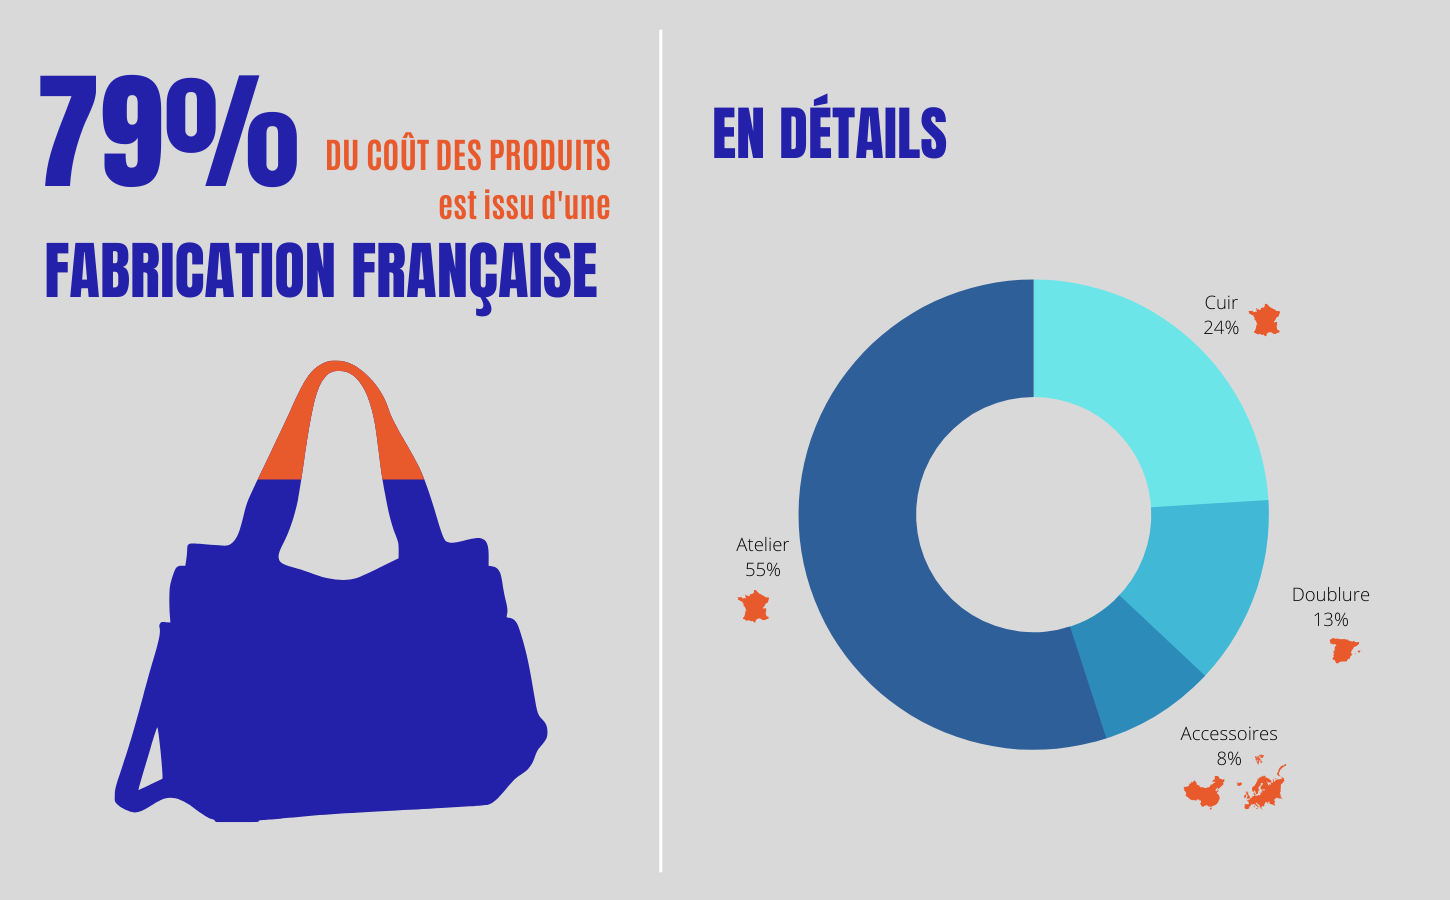 79% du coût des produits est issu d'une fabrication française